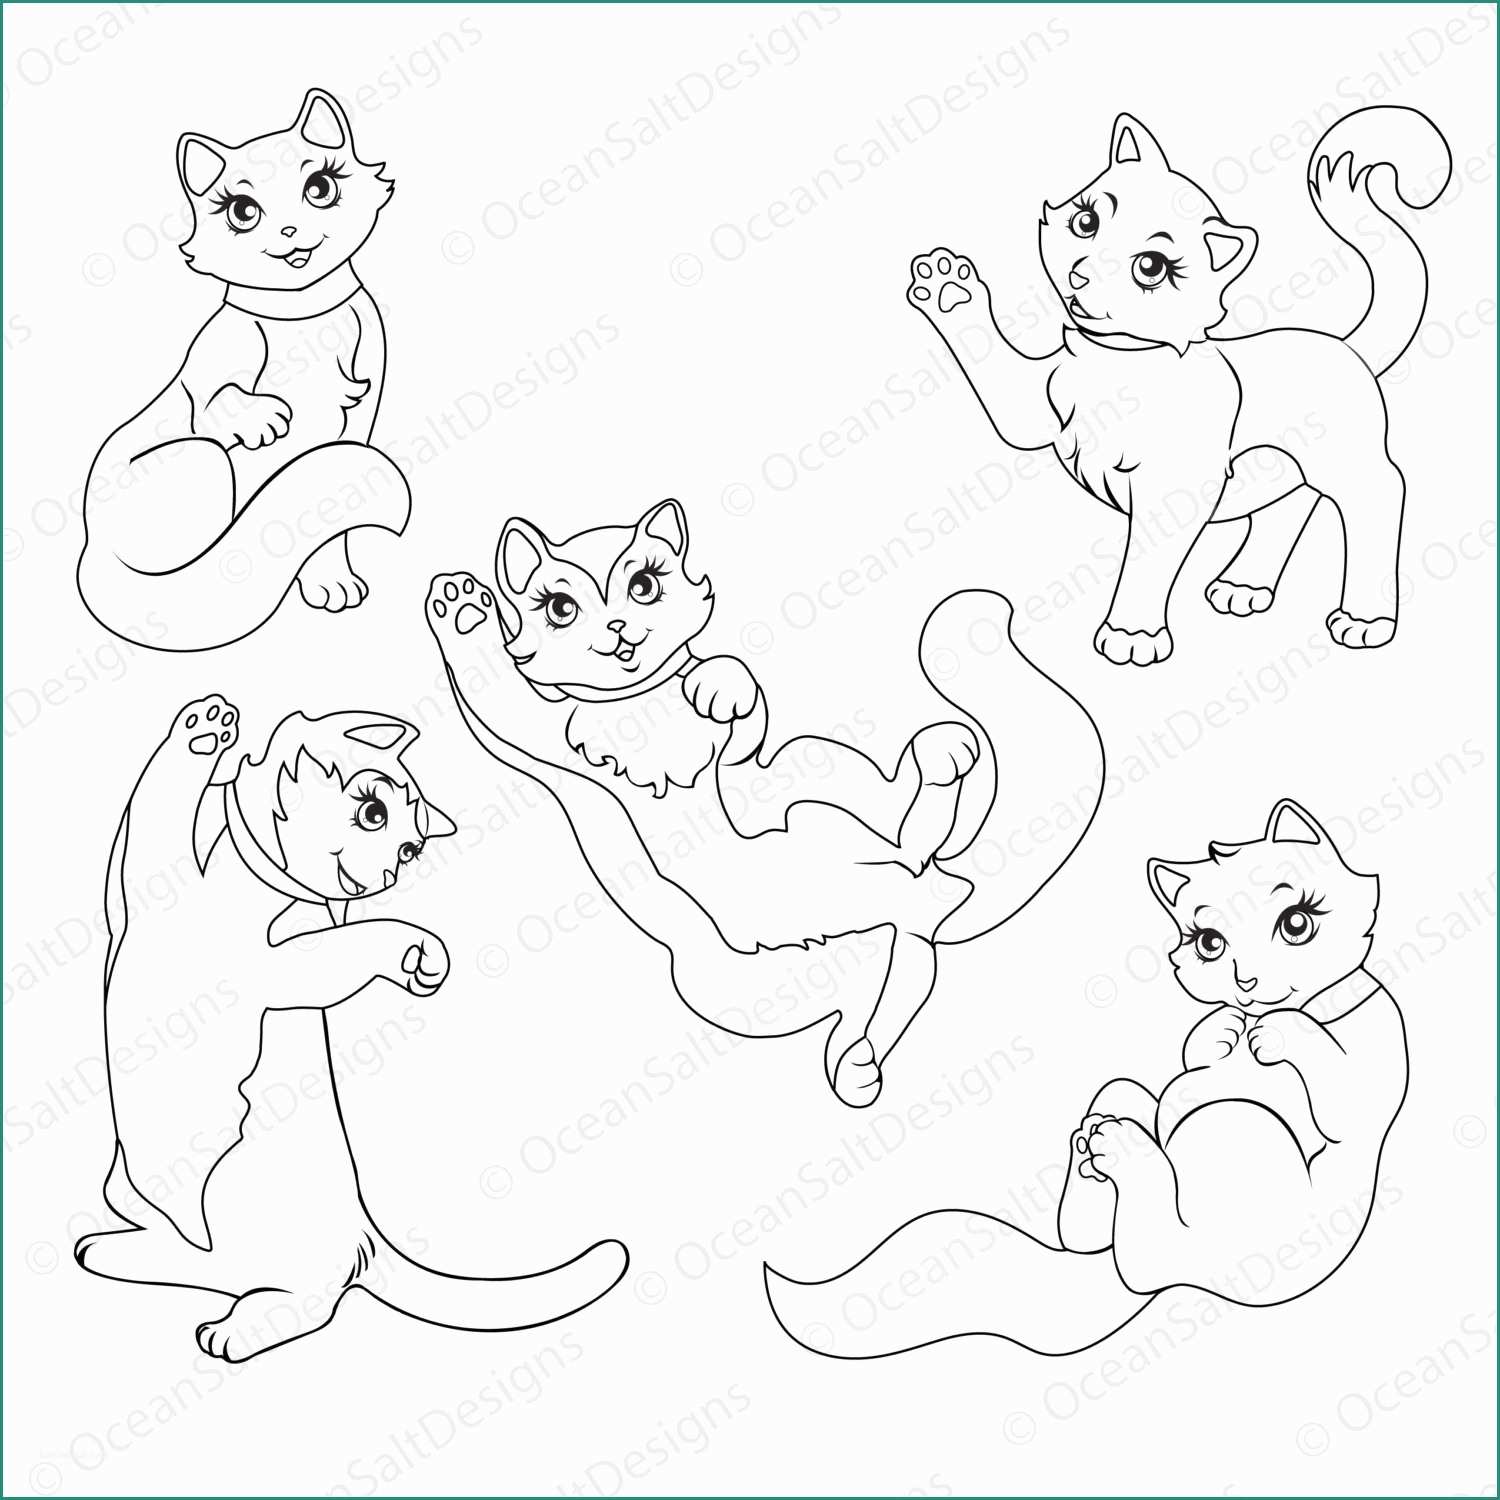 Disegnare Un Gatto E Unico Disegni Da Colorare Gatto Regdoll Cucciolo